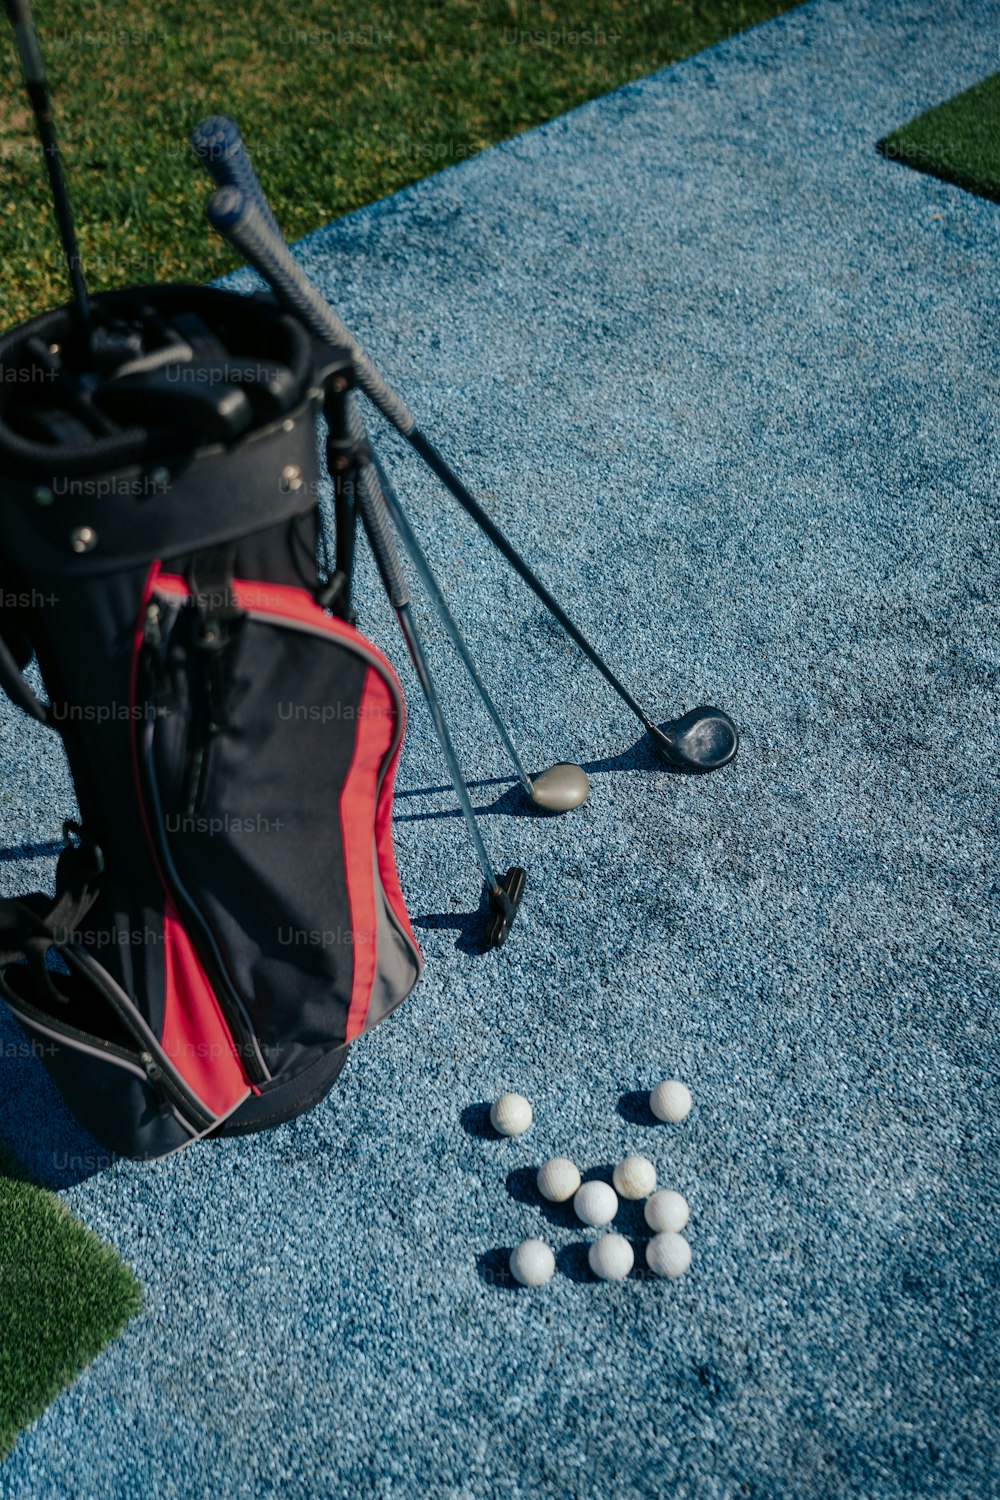 골프 클럽 옆 바닥에 앉아있는 골프 공 가방